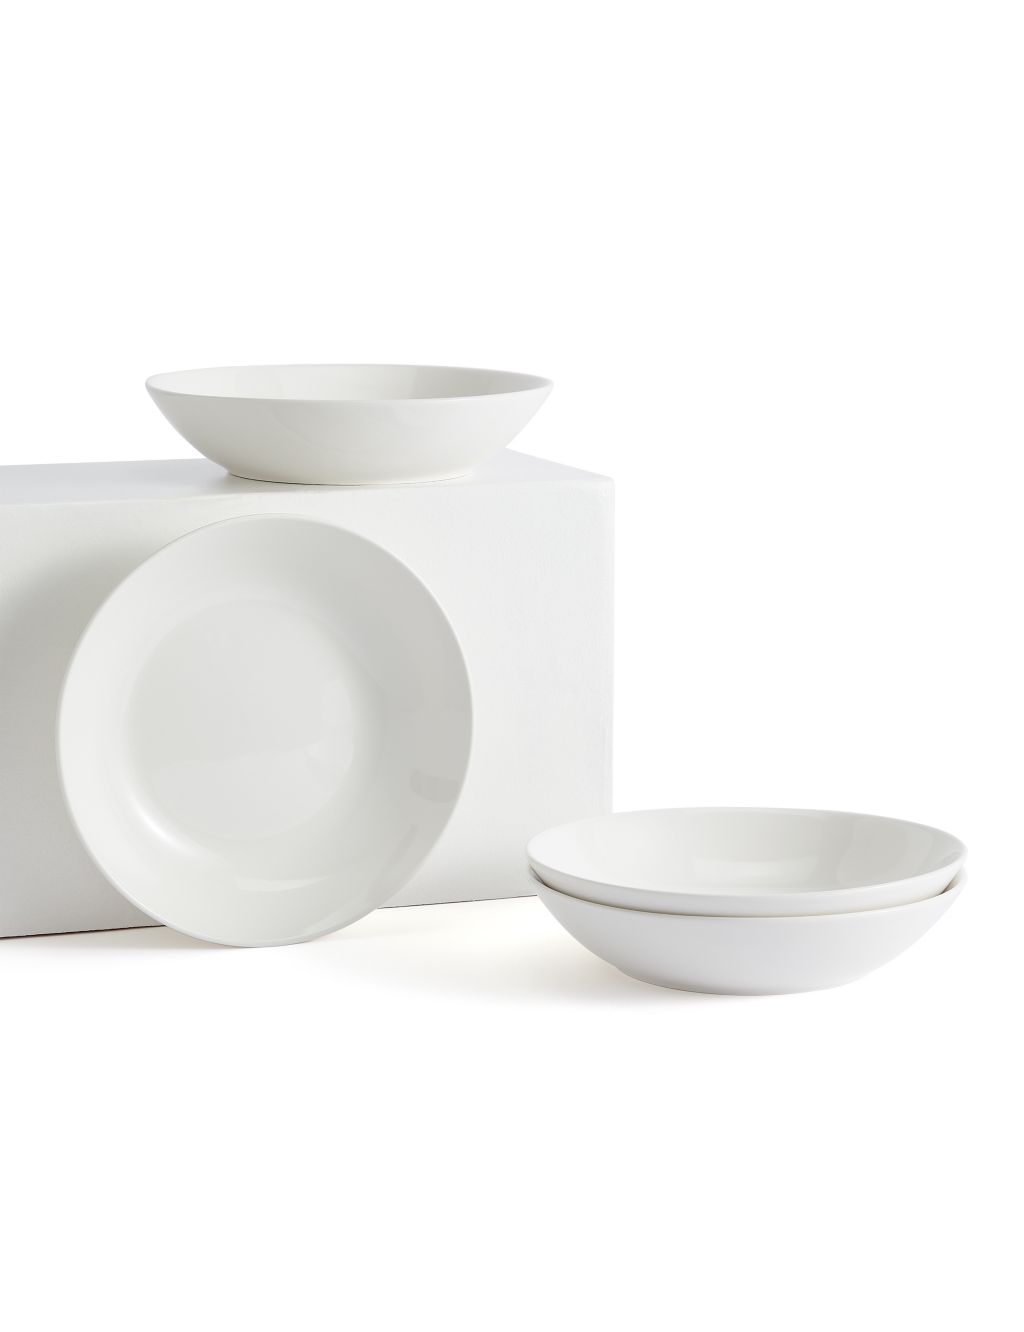 Set of 4 Porcelain Pasta Bowls image 1